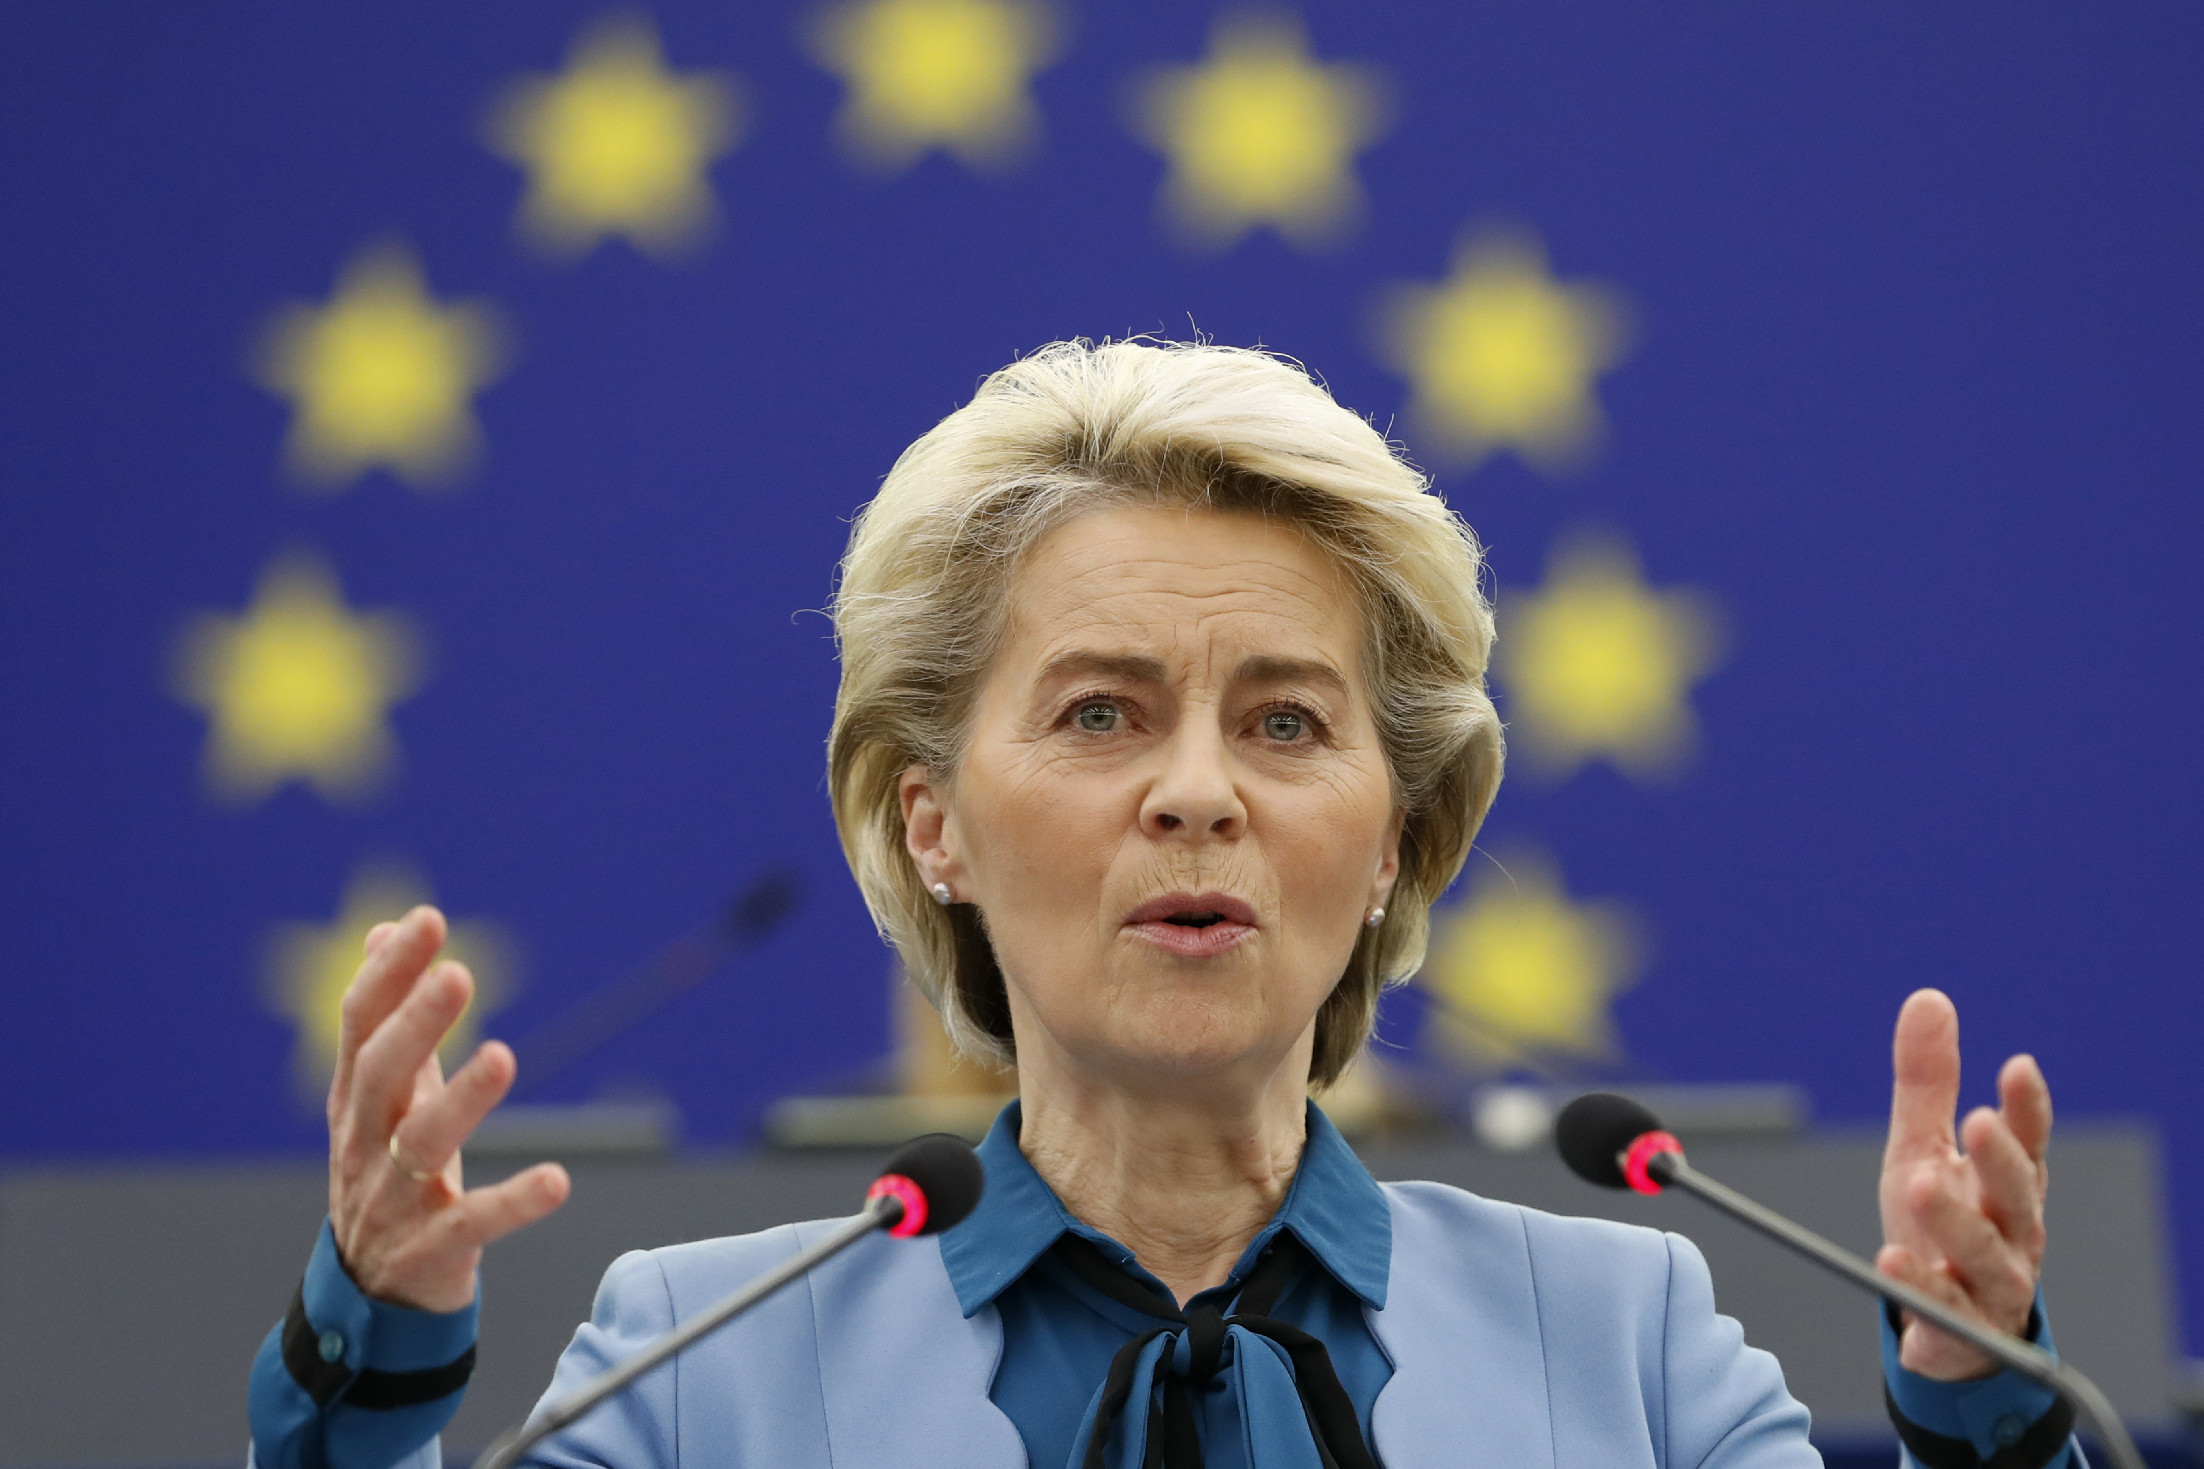 Az Európai Bizottság előremutató együttműködést remél Olaszország leendő kormányával